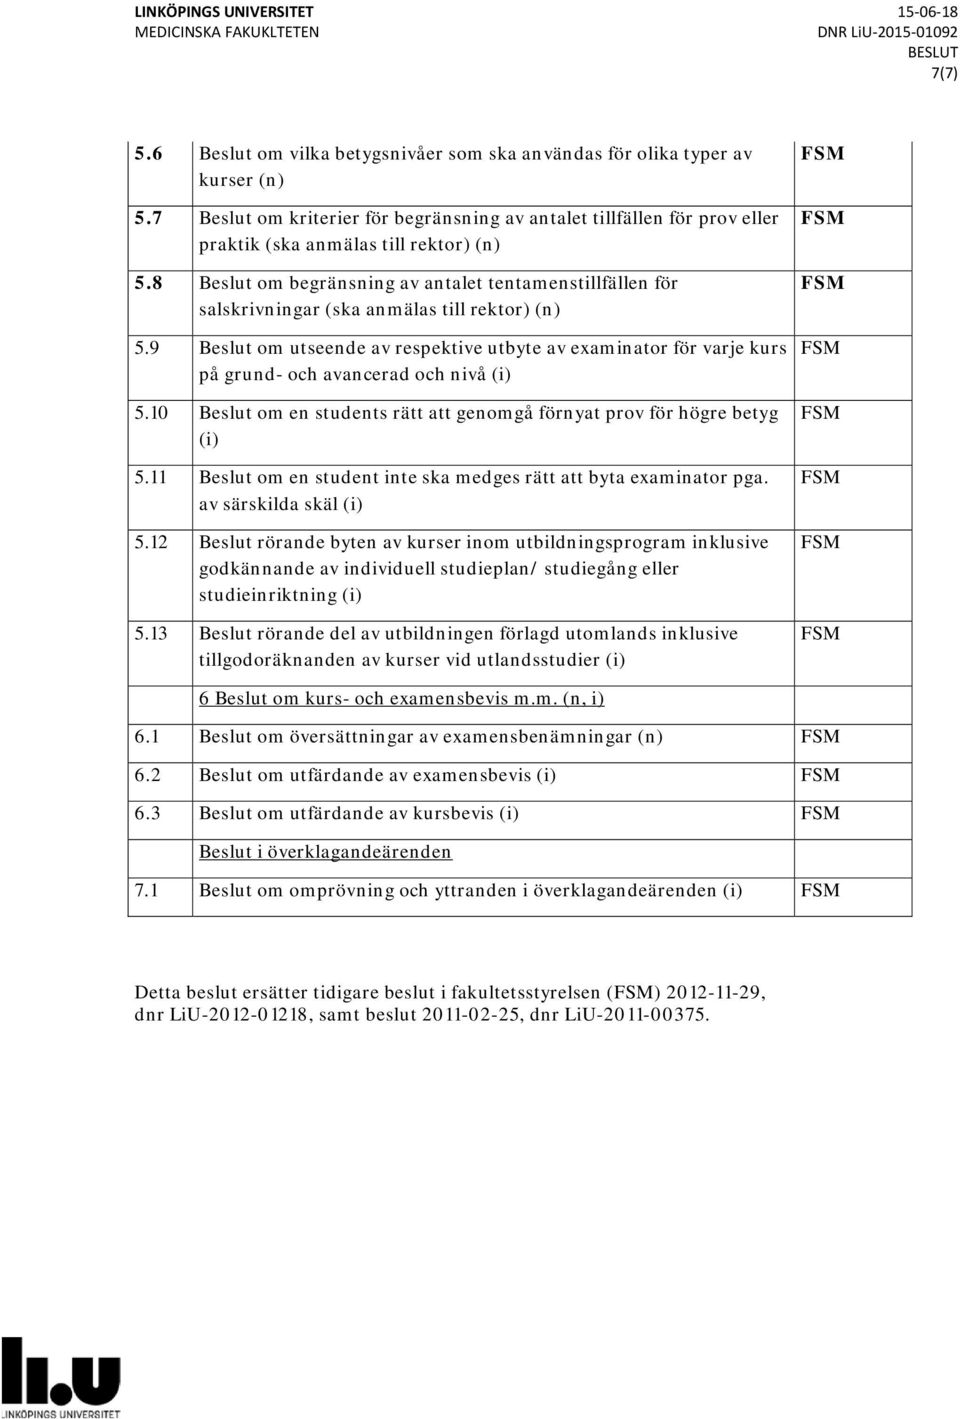 8 Beslut om begränsning av antalet tentamenstillfällen för salskrivningar (ska anmälas till rektor) (n) 5.